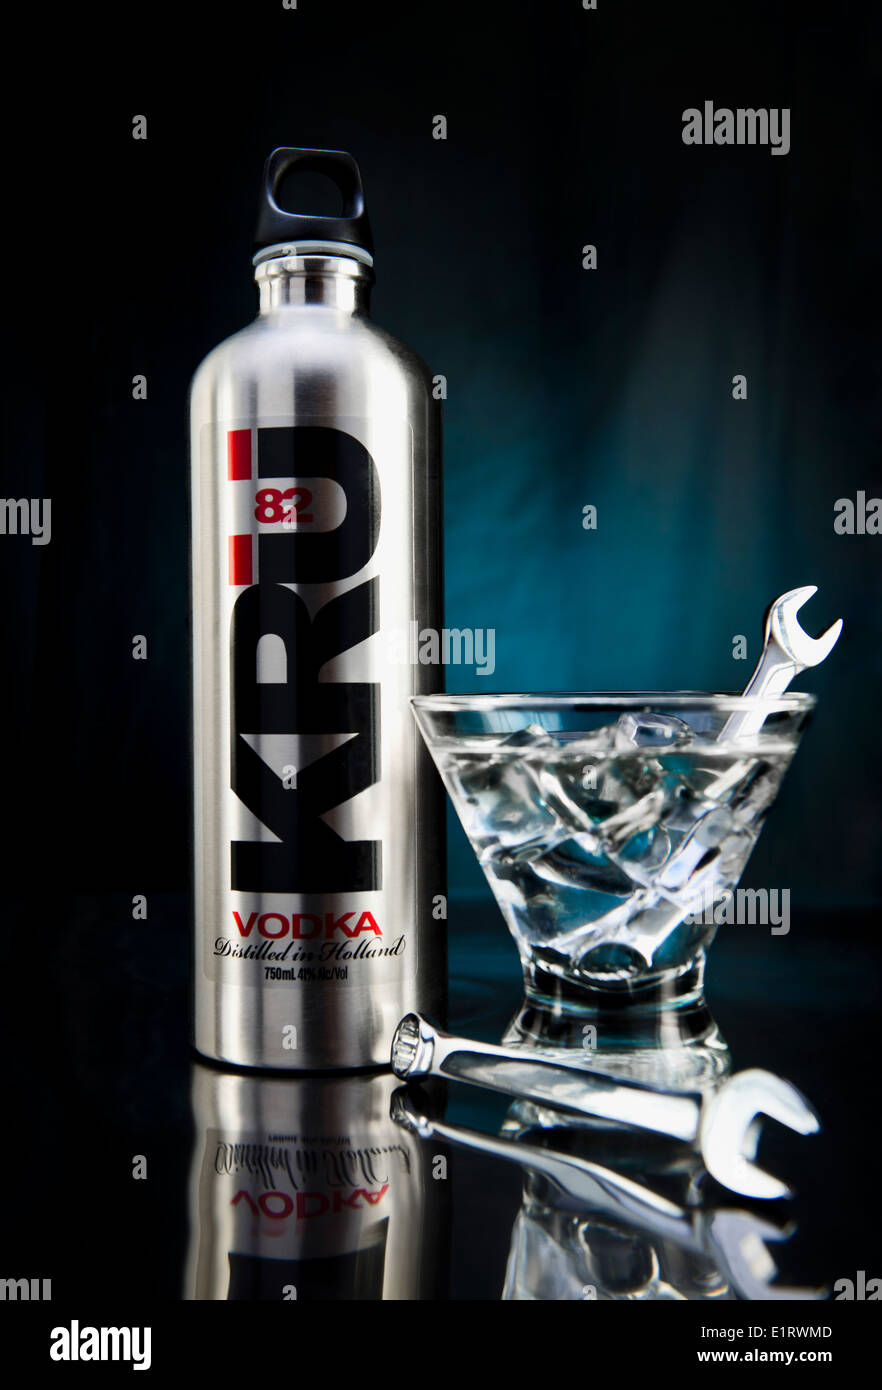 KRU 82 Vodka con Martini guarnito con una chiave Chrome agitare swizzle stick / concetto: industriale, 'blue collar' Foto Stock